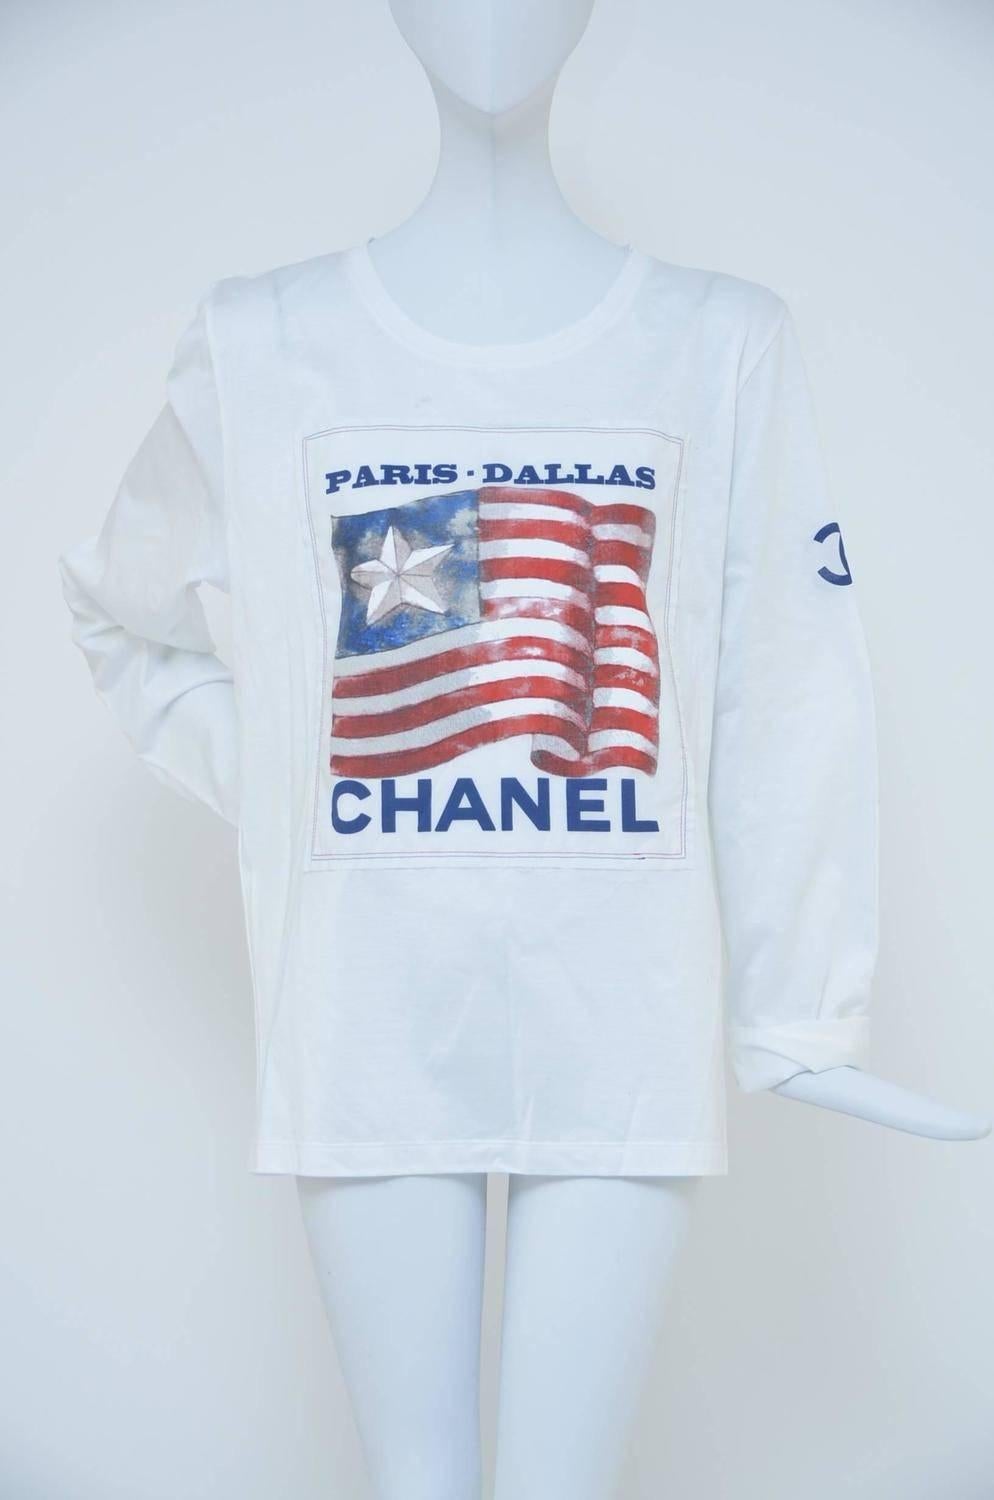 Chanel Paris Dallas t'shirt.
New without tags.
Size M.
Measurements: Bust 32”, Waist 32”, Length 23”
Fabric Content: 100% Cotton .

FINAL SALE.